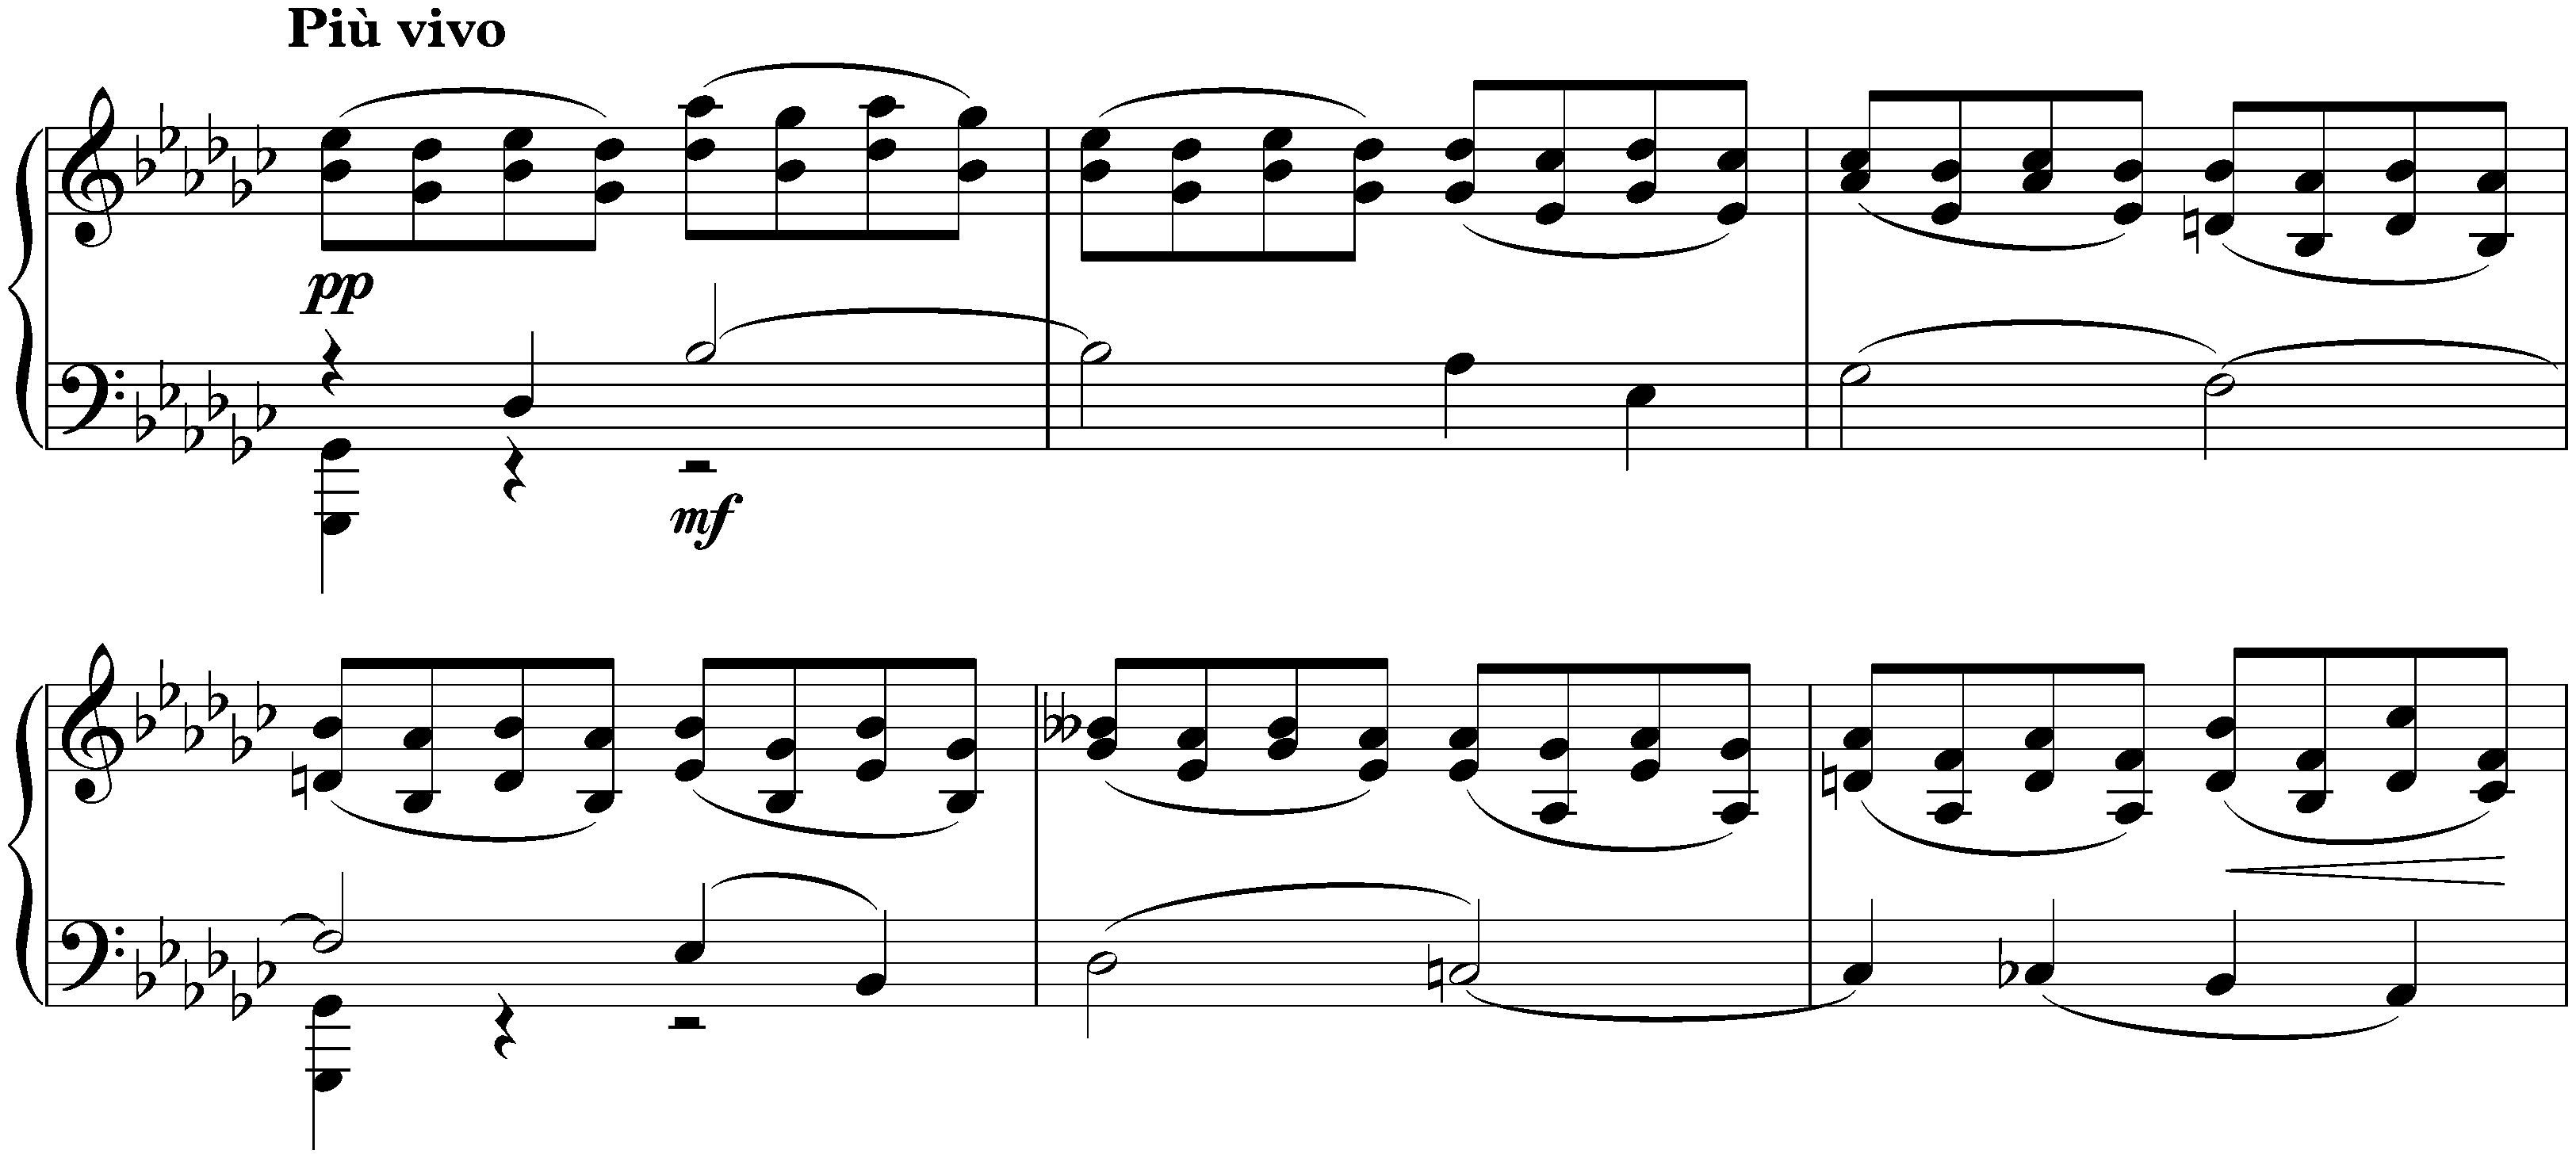 Morceaux de fantaisie, op. 3; 1. Elégie in E-flat minor